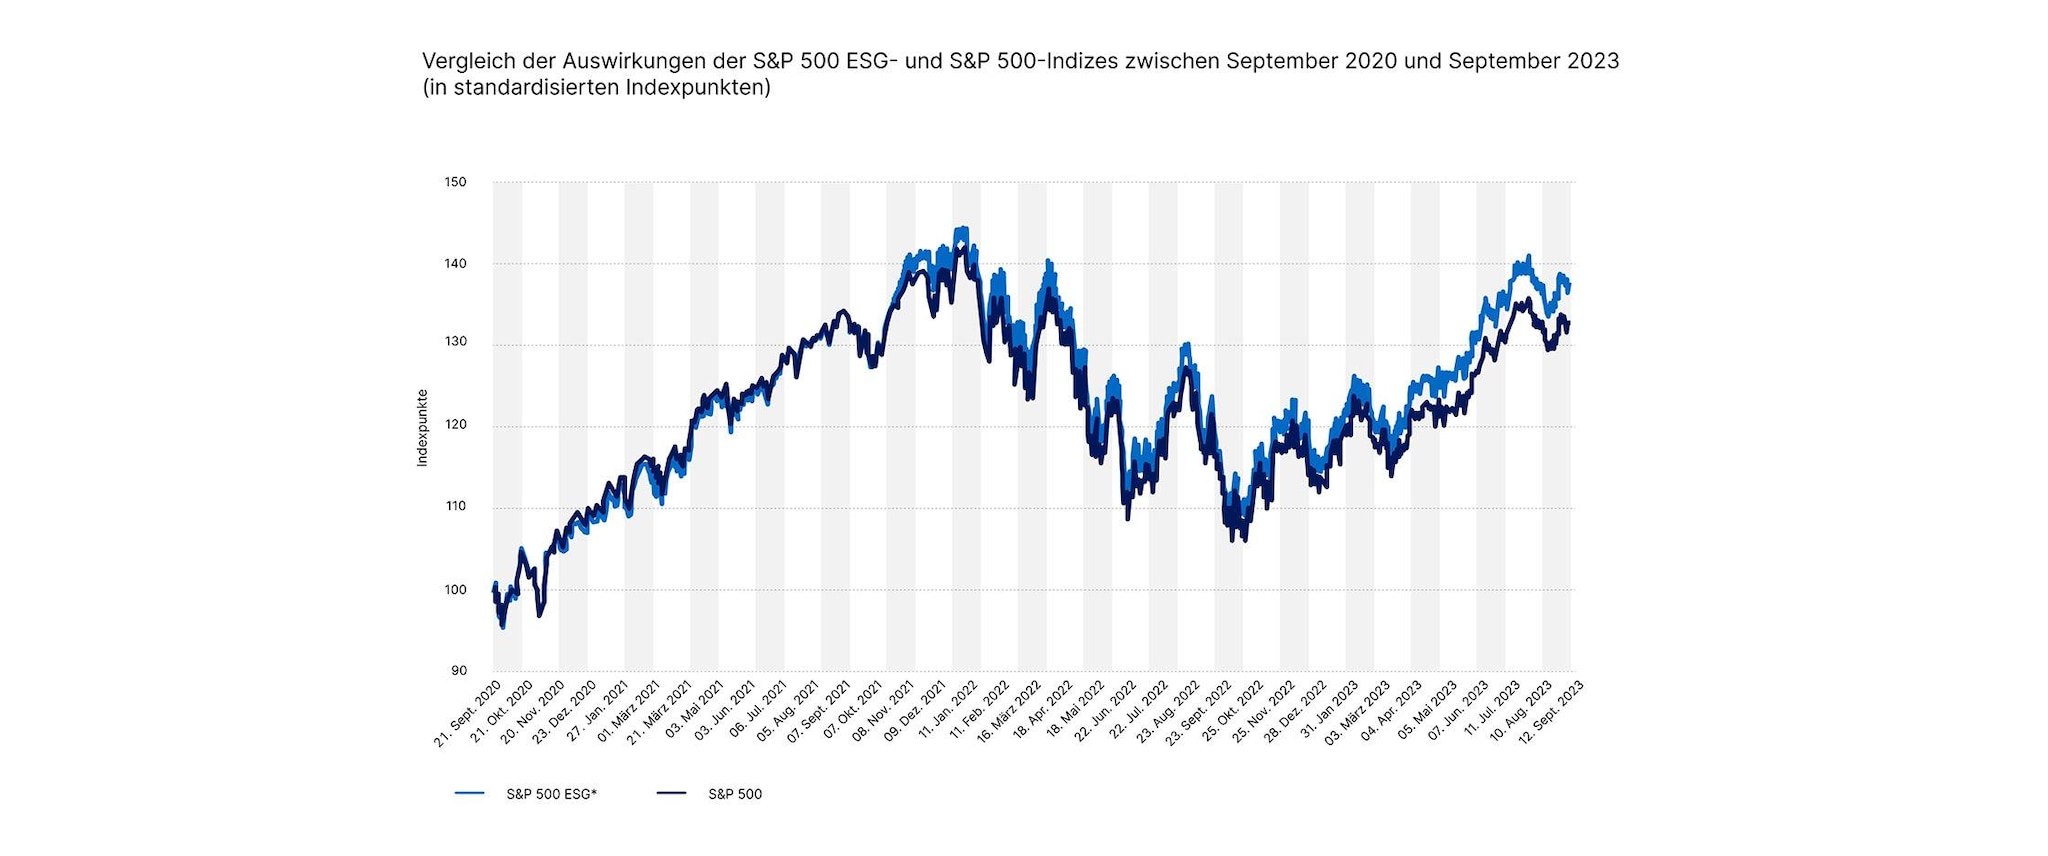 10008-2 Vergleich der Auswirkungen der S&P 500 ESG- und S&P 500-Indizes_936x2240